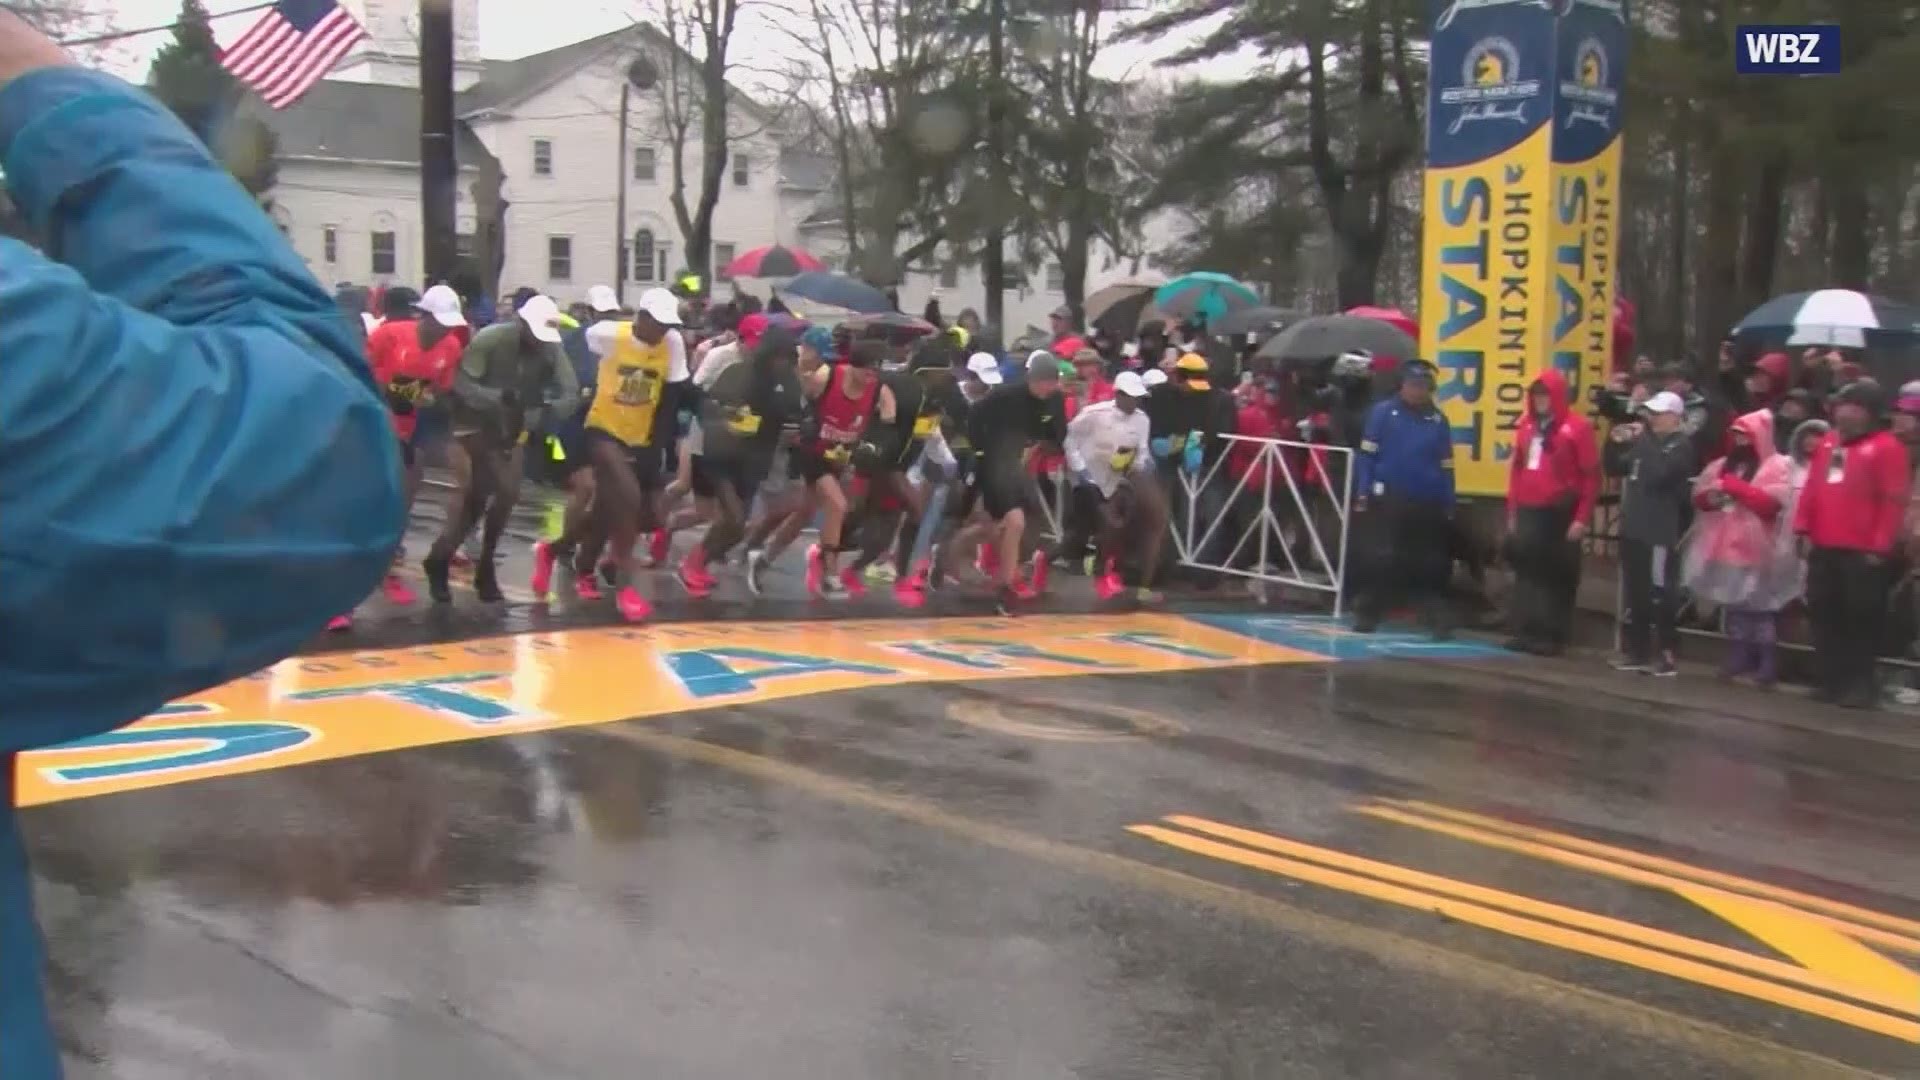 Local runner's Boston Marathon training put on hold after postponement